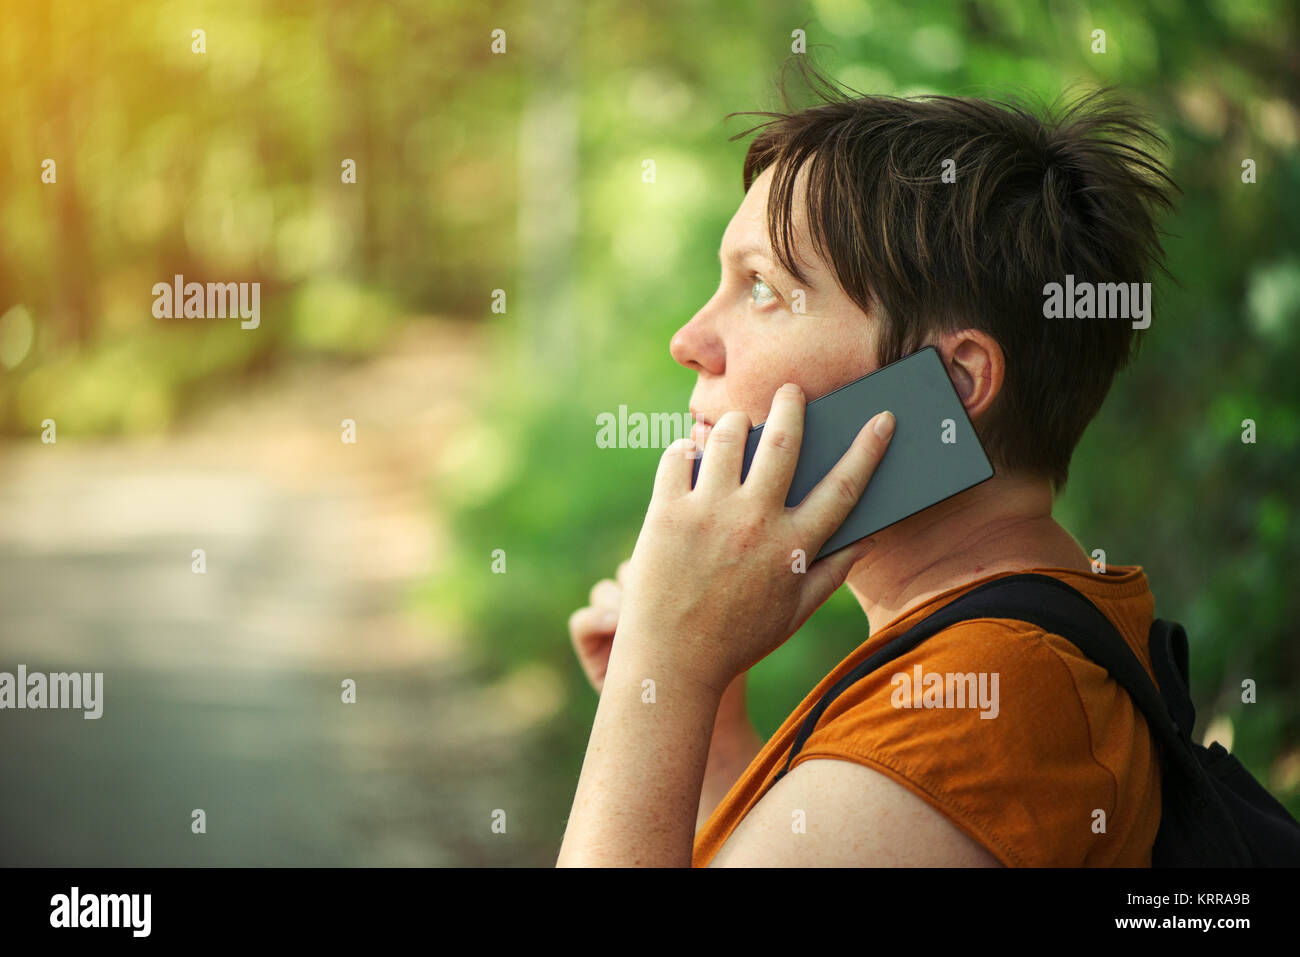 Woman talking on mobile phone in park, femelle adulte backpacker la marche à l'extérieur et l'utilisation de smartphone pour la communication. Banque D'Images